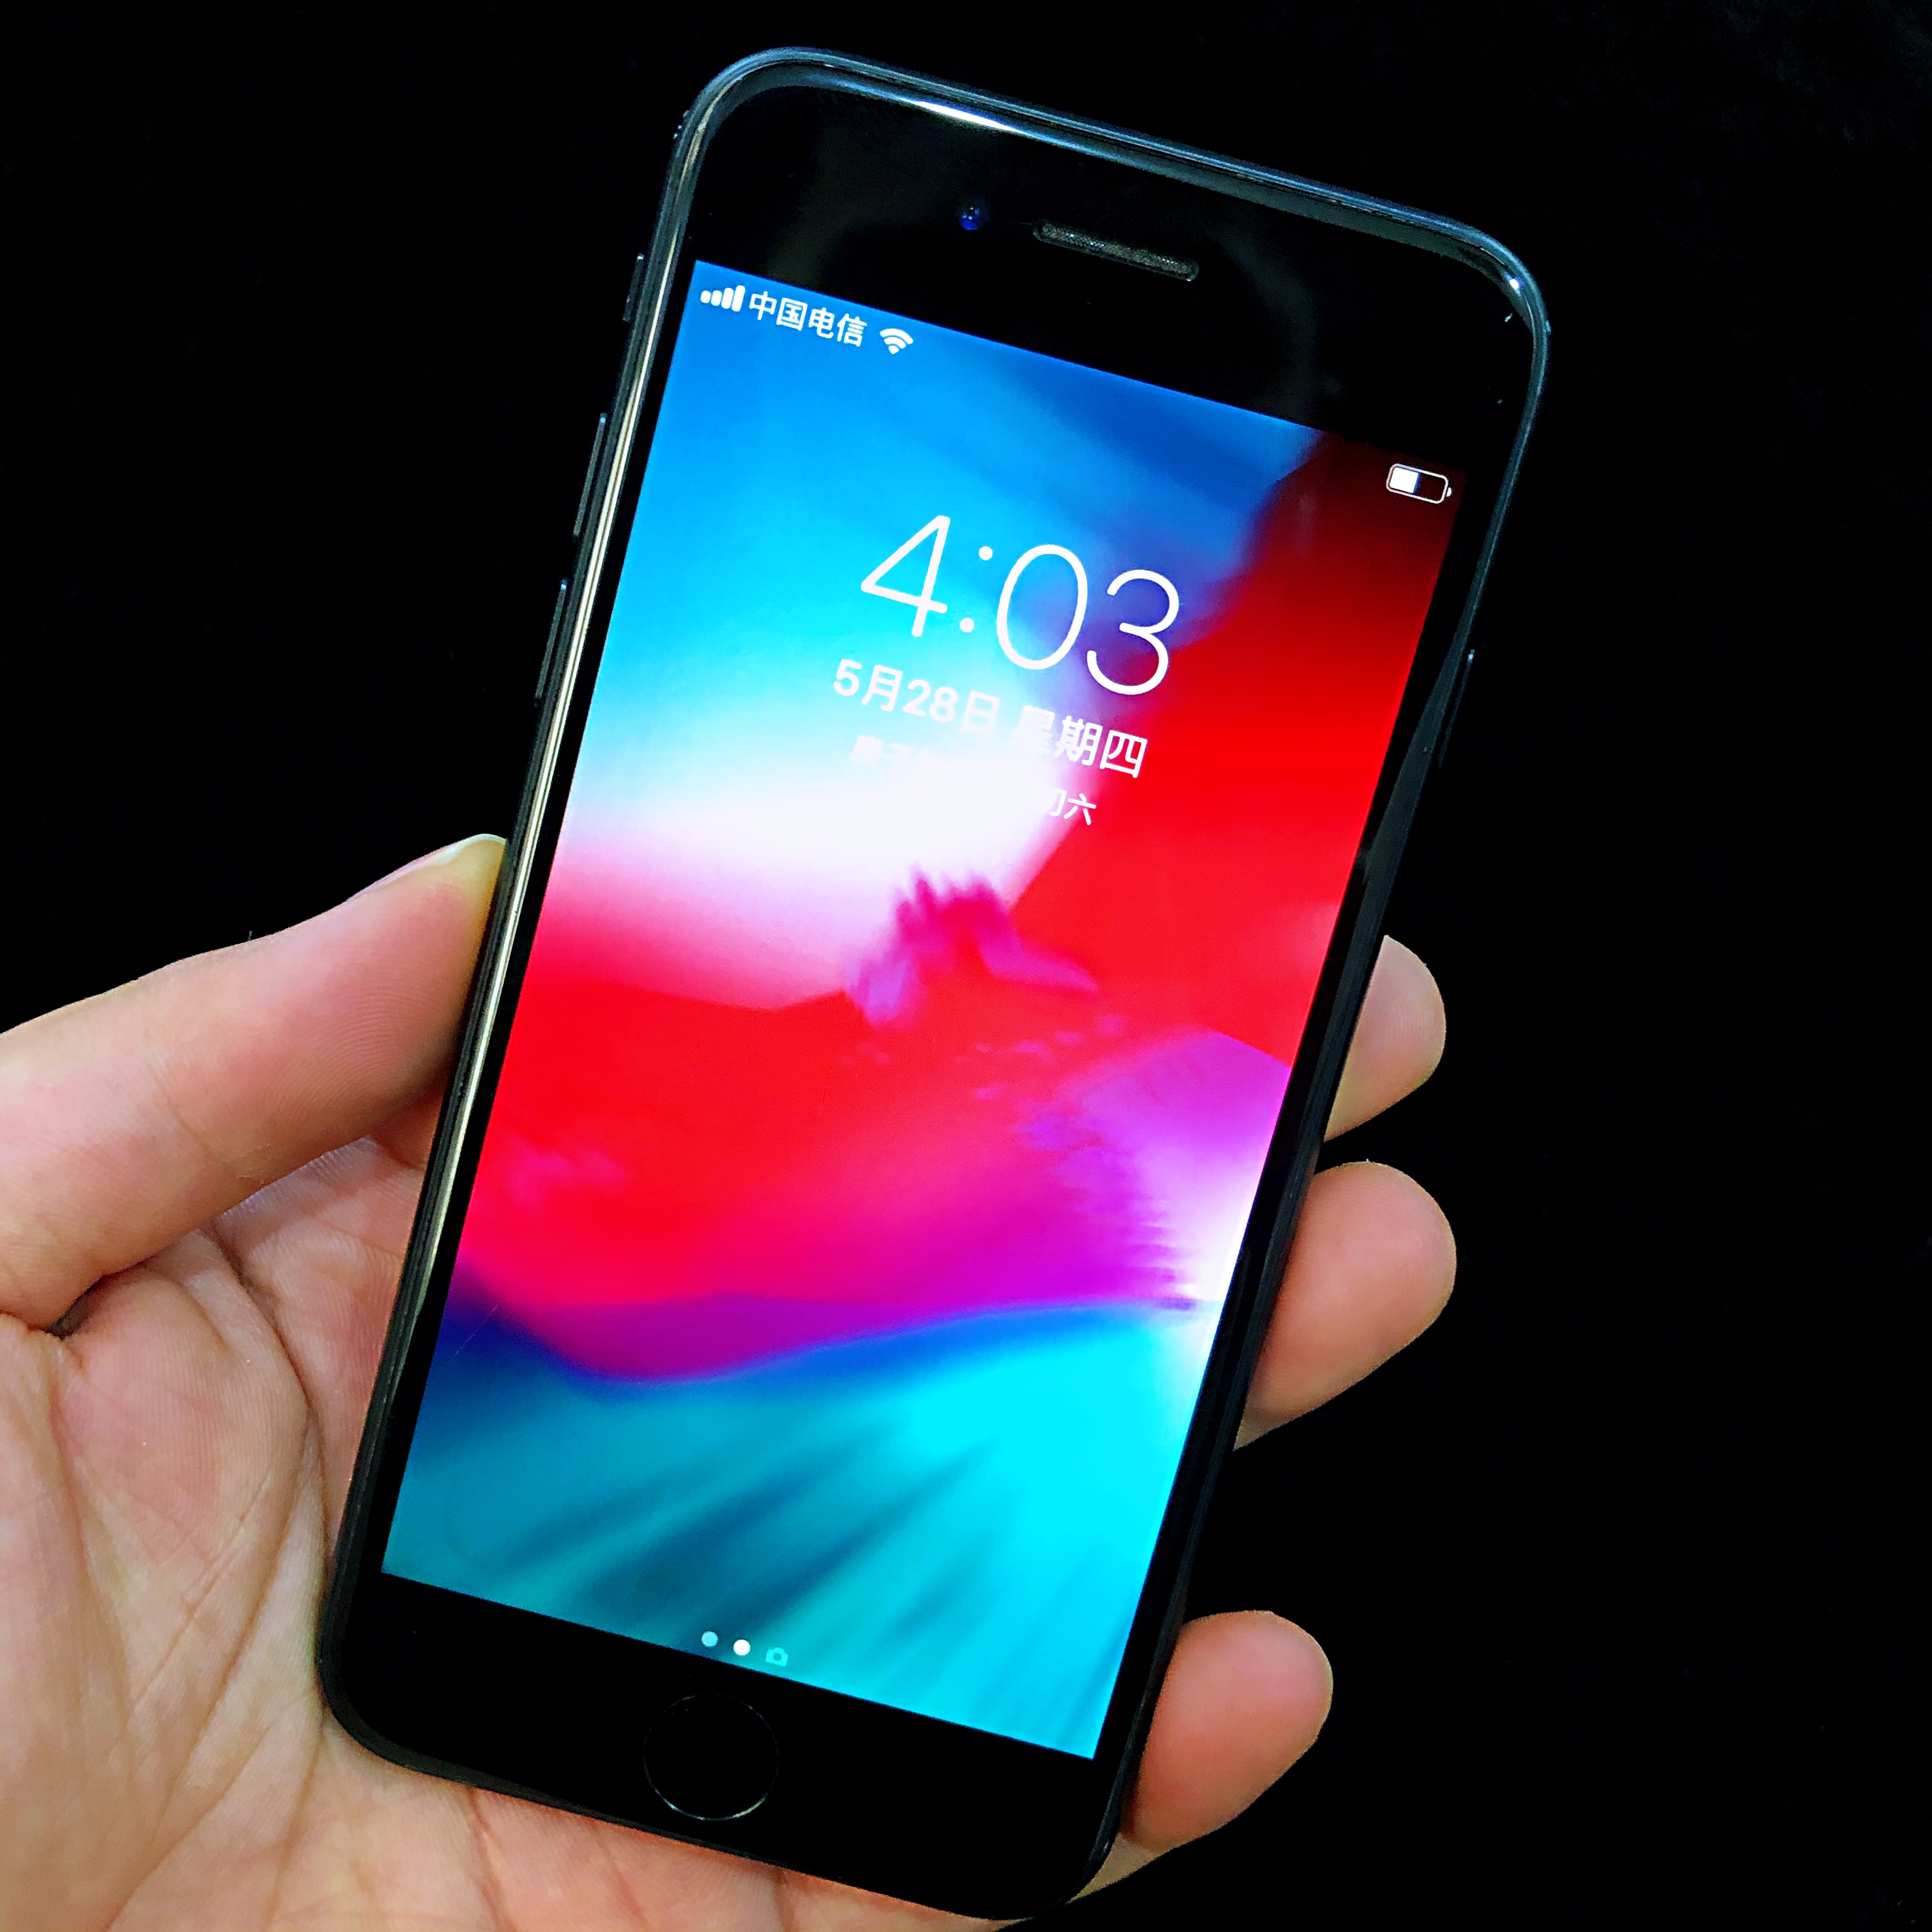 苹果新专利获批：亚光黑配色未来用于 iPhone 和 Mac 设备上 - 哔哩哔哩